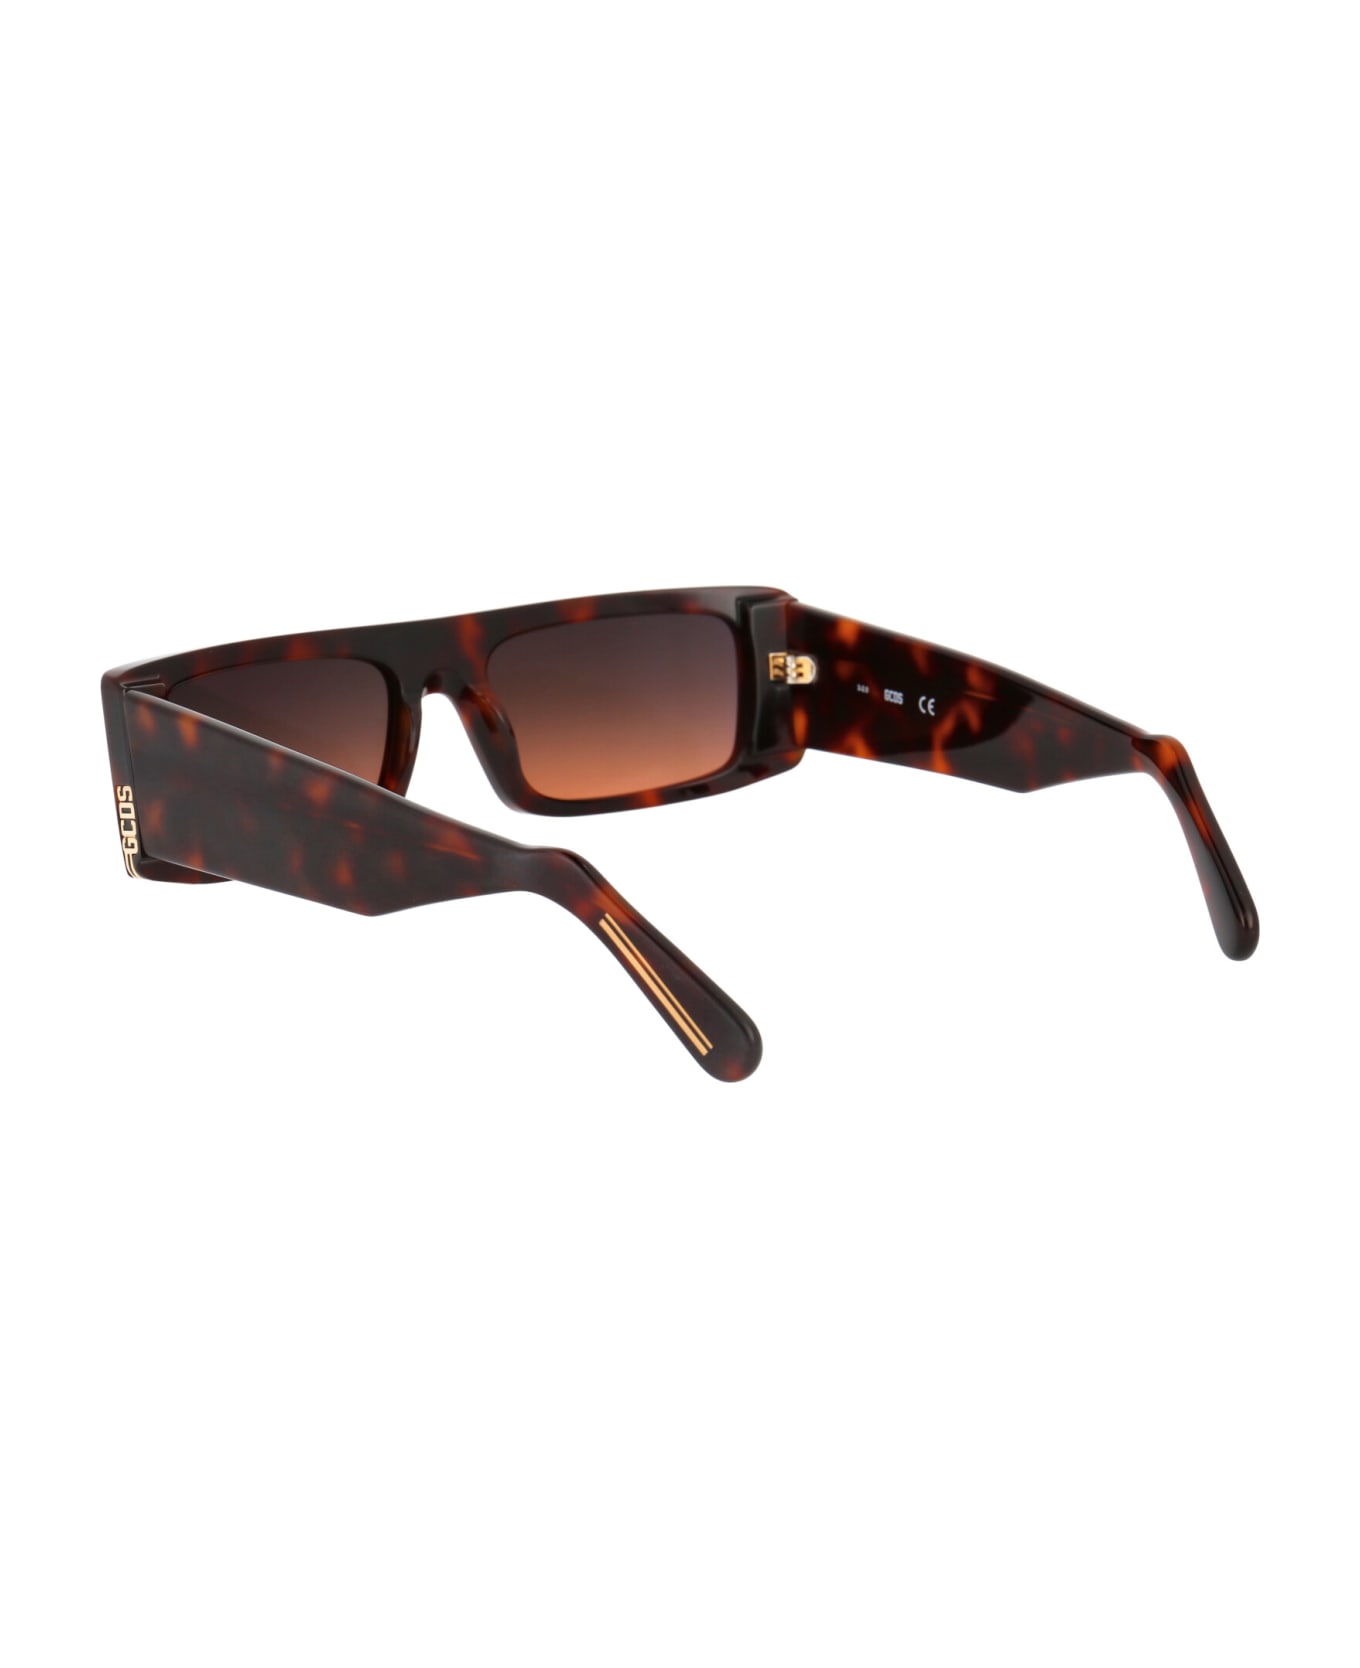 GCDS Gd0009 Sunglasses - 52B Avana Scura/Fumo Grad